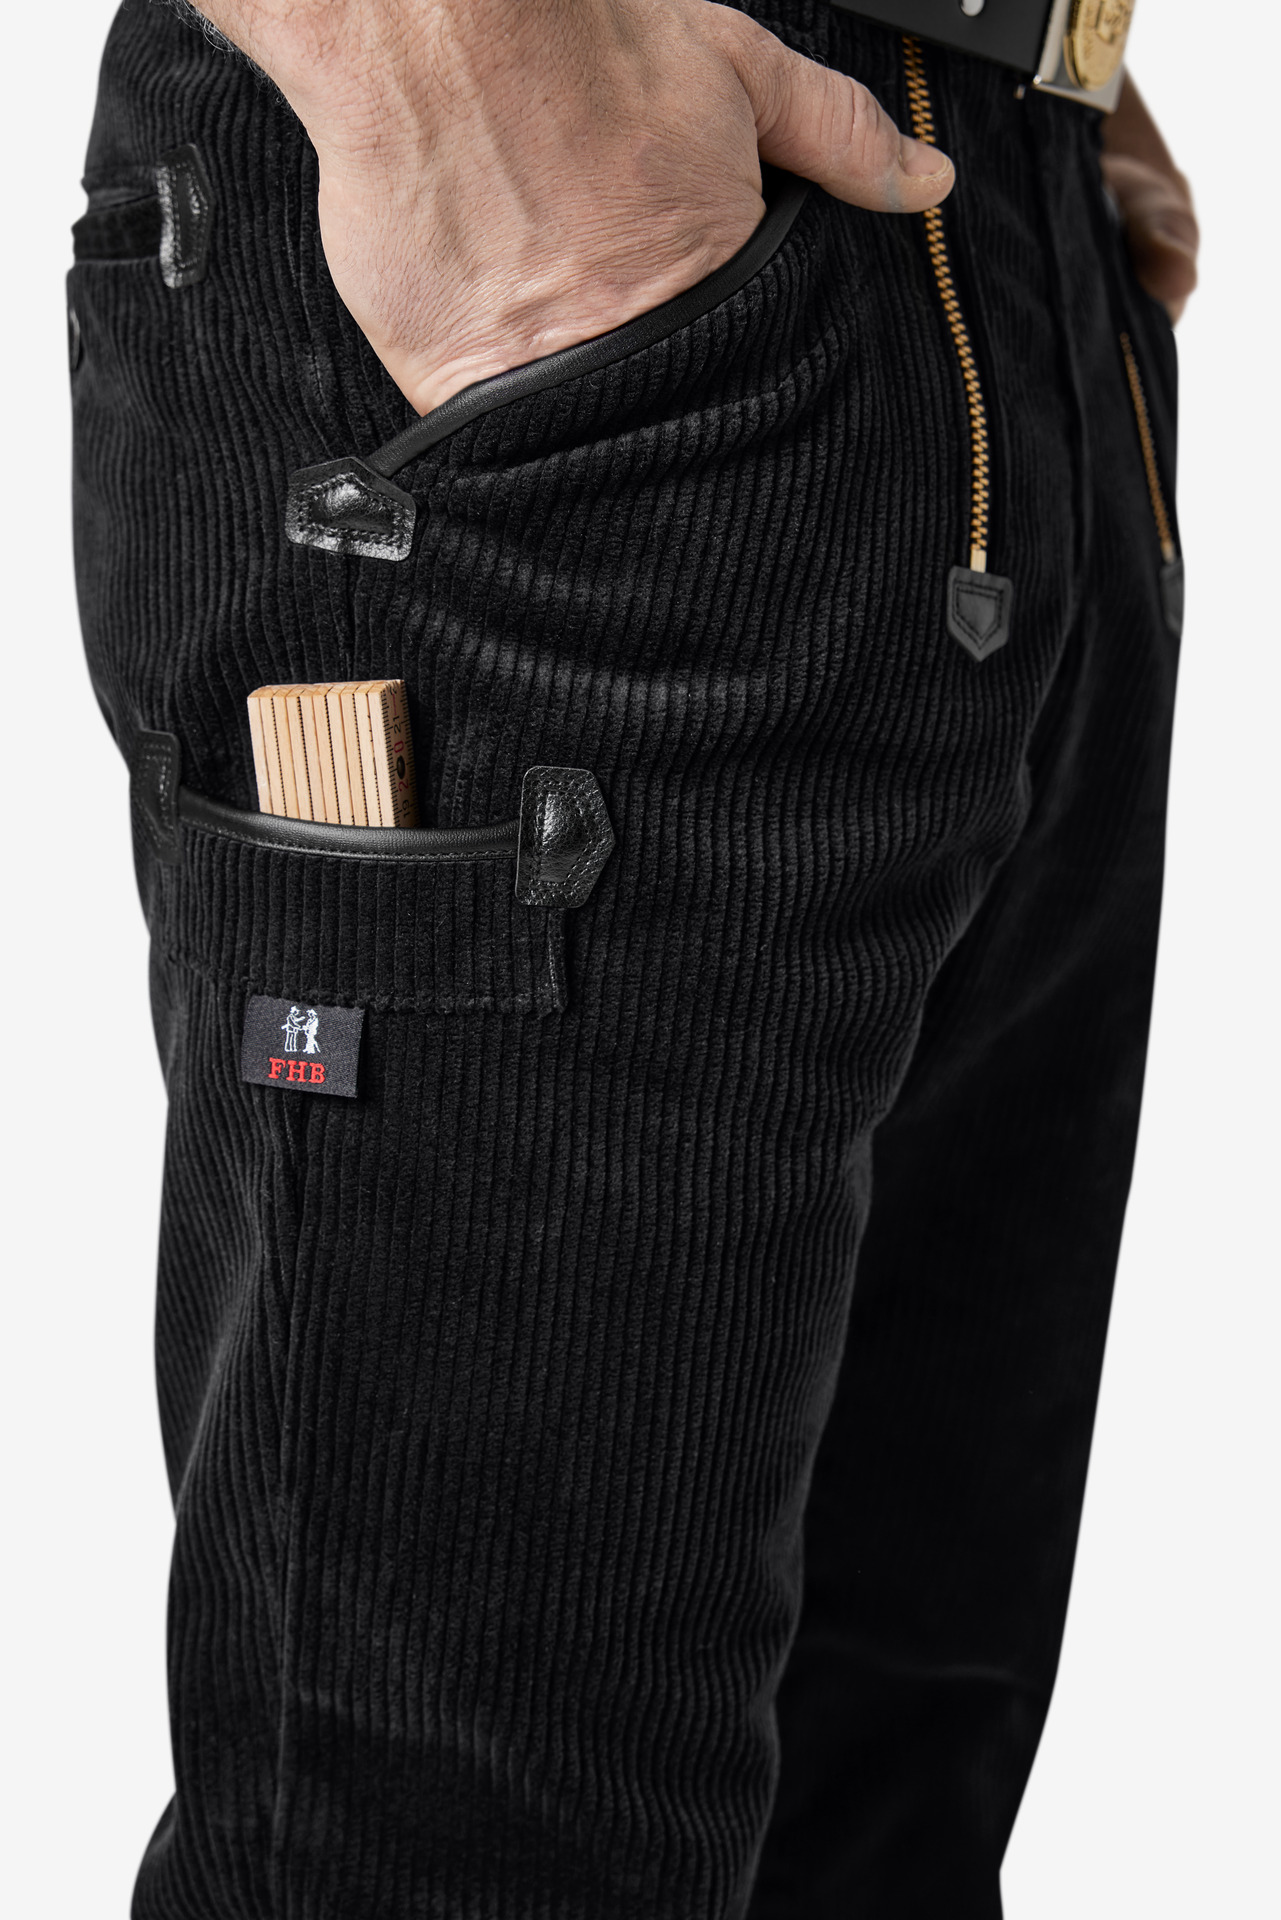 Cordhose schwarz mit Seitentaschen und Zollstocktasche